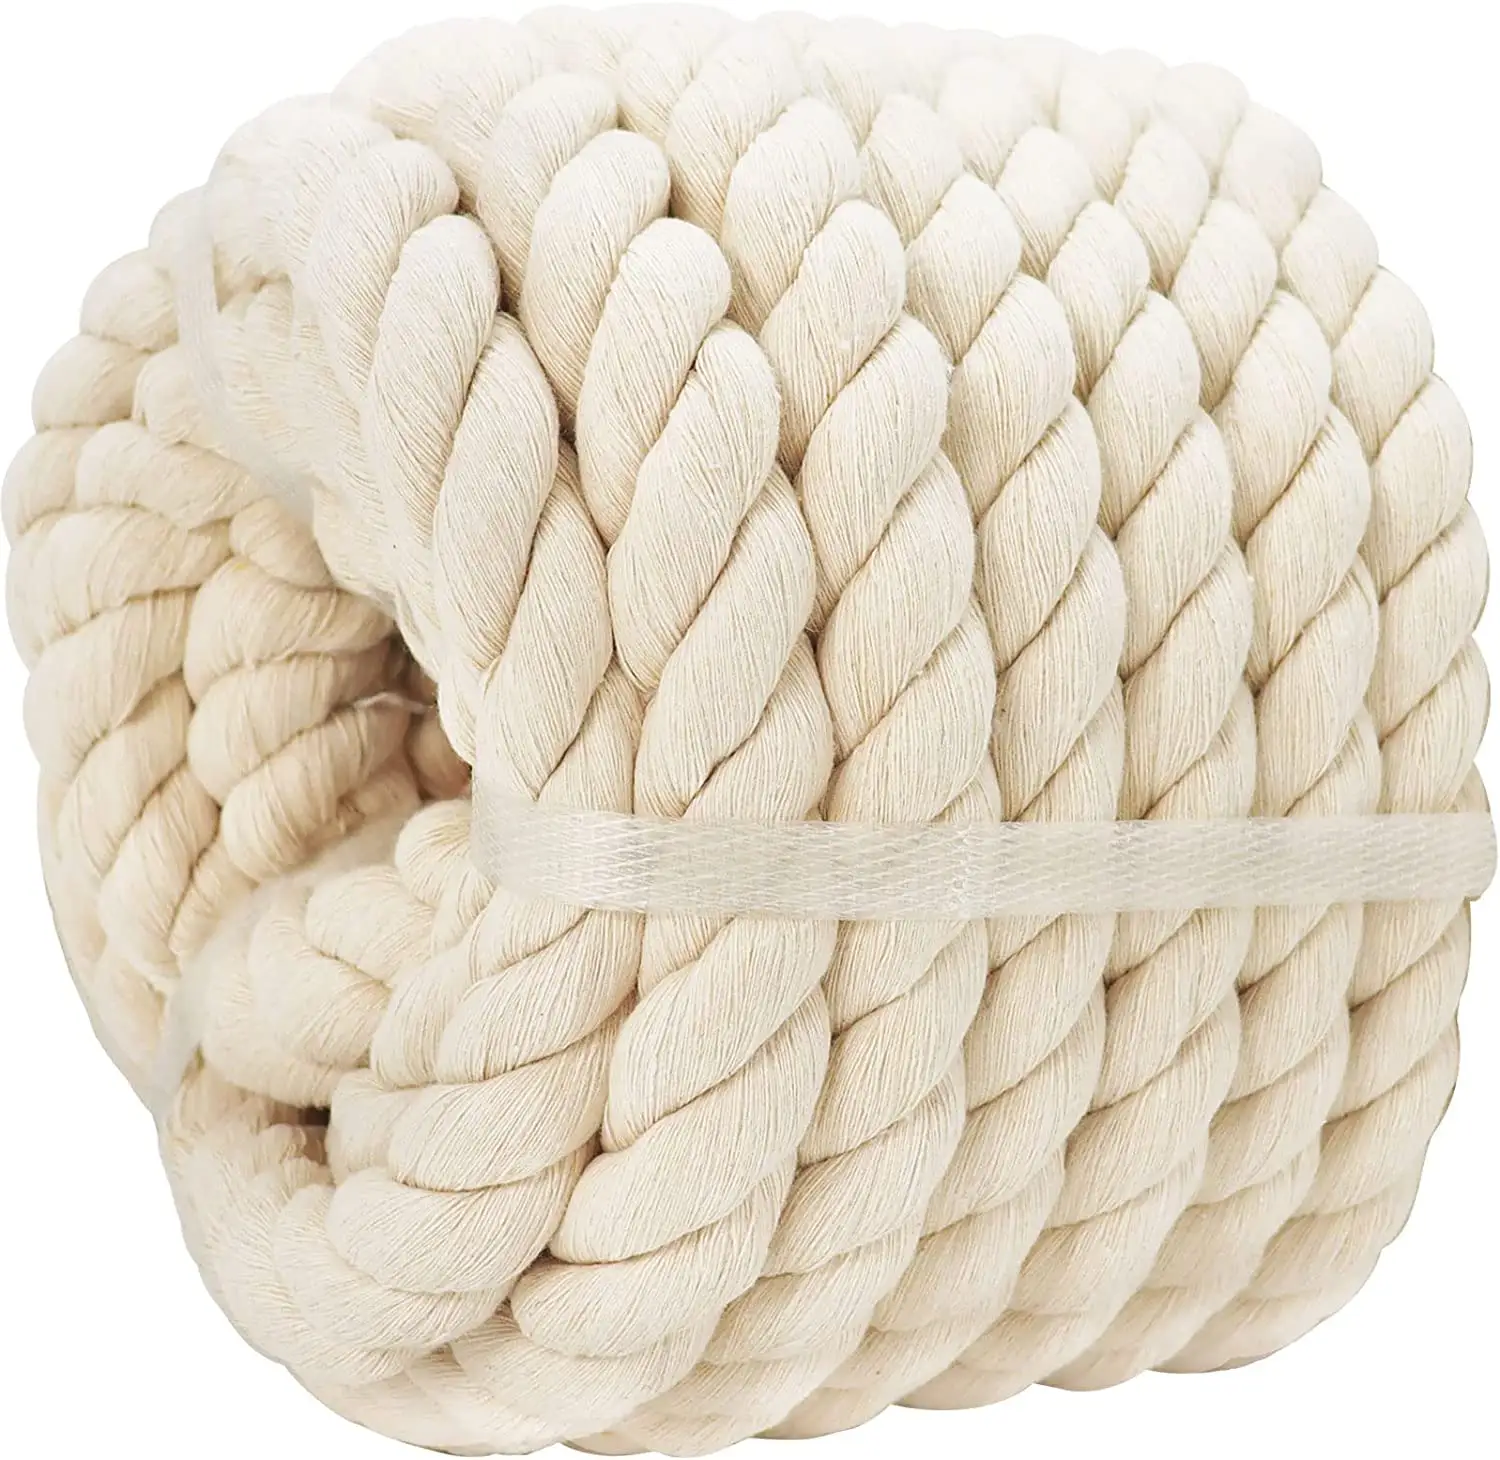 Hh cordão de algodão trançado para pulso, artesanato de algodão trançado macio personalizado 3mm 5mm